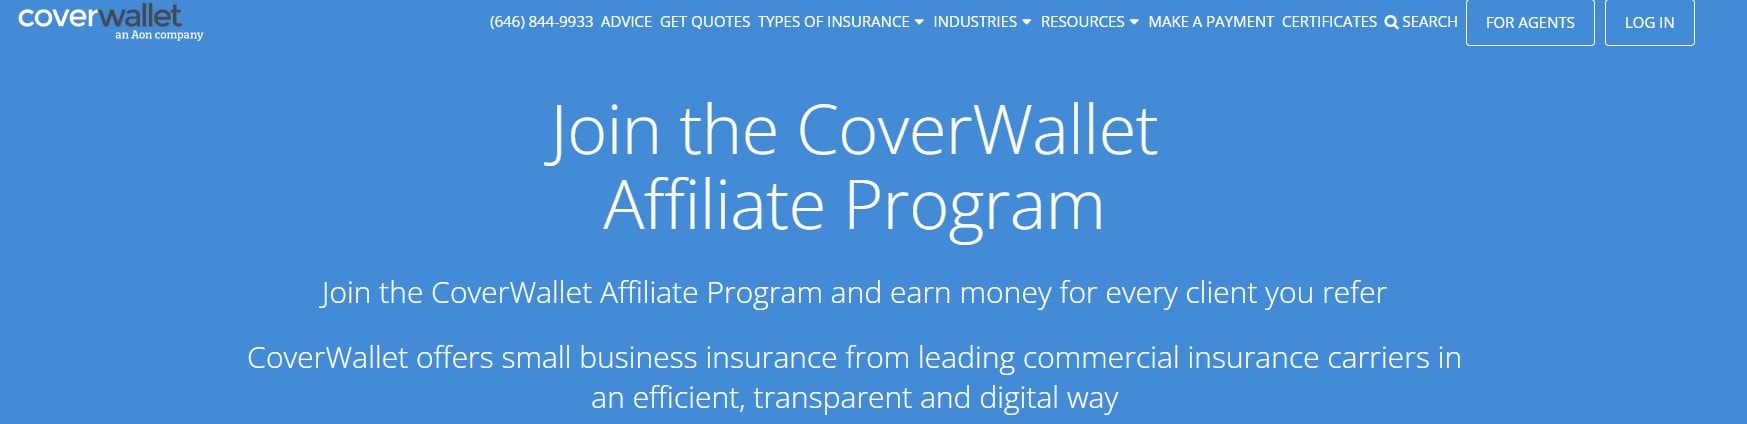 Coverwallet Insurance affiliate program